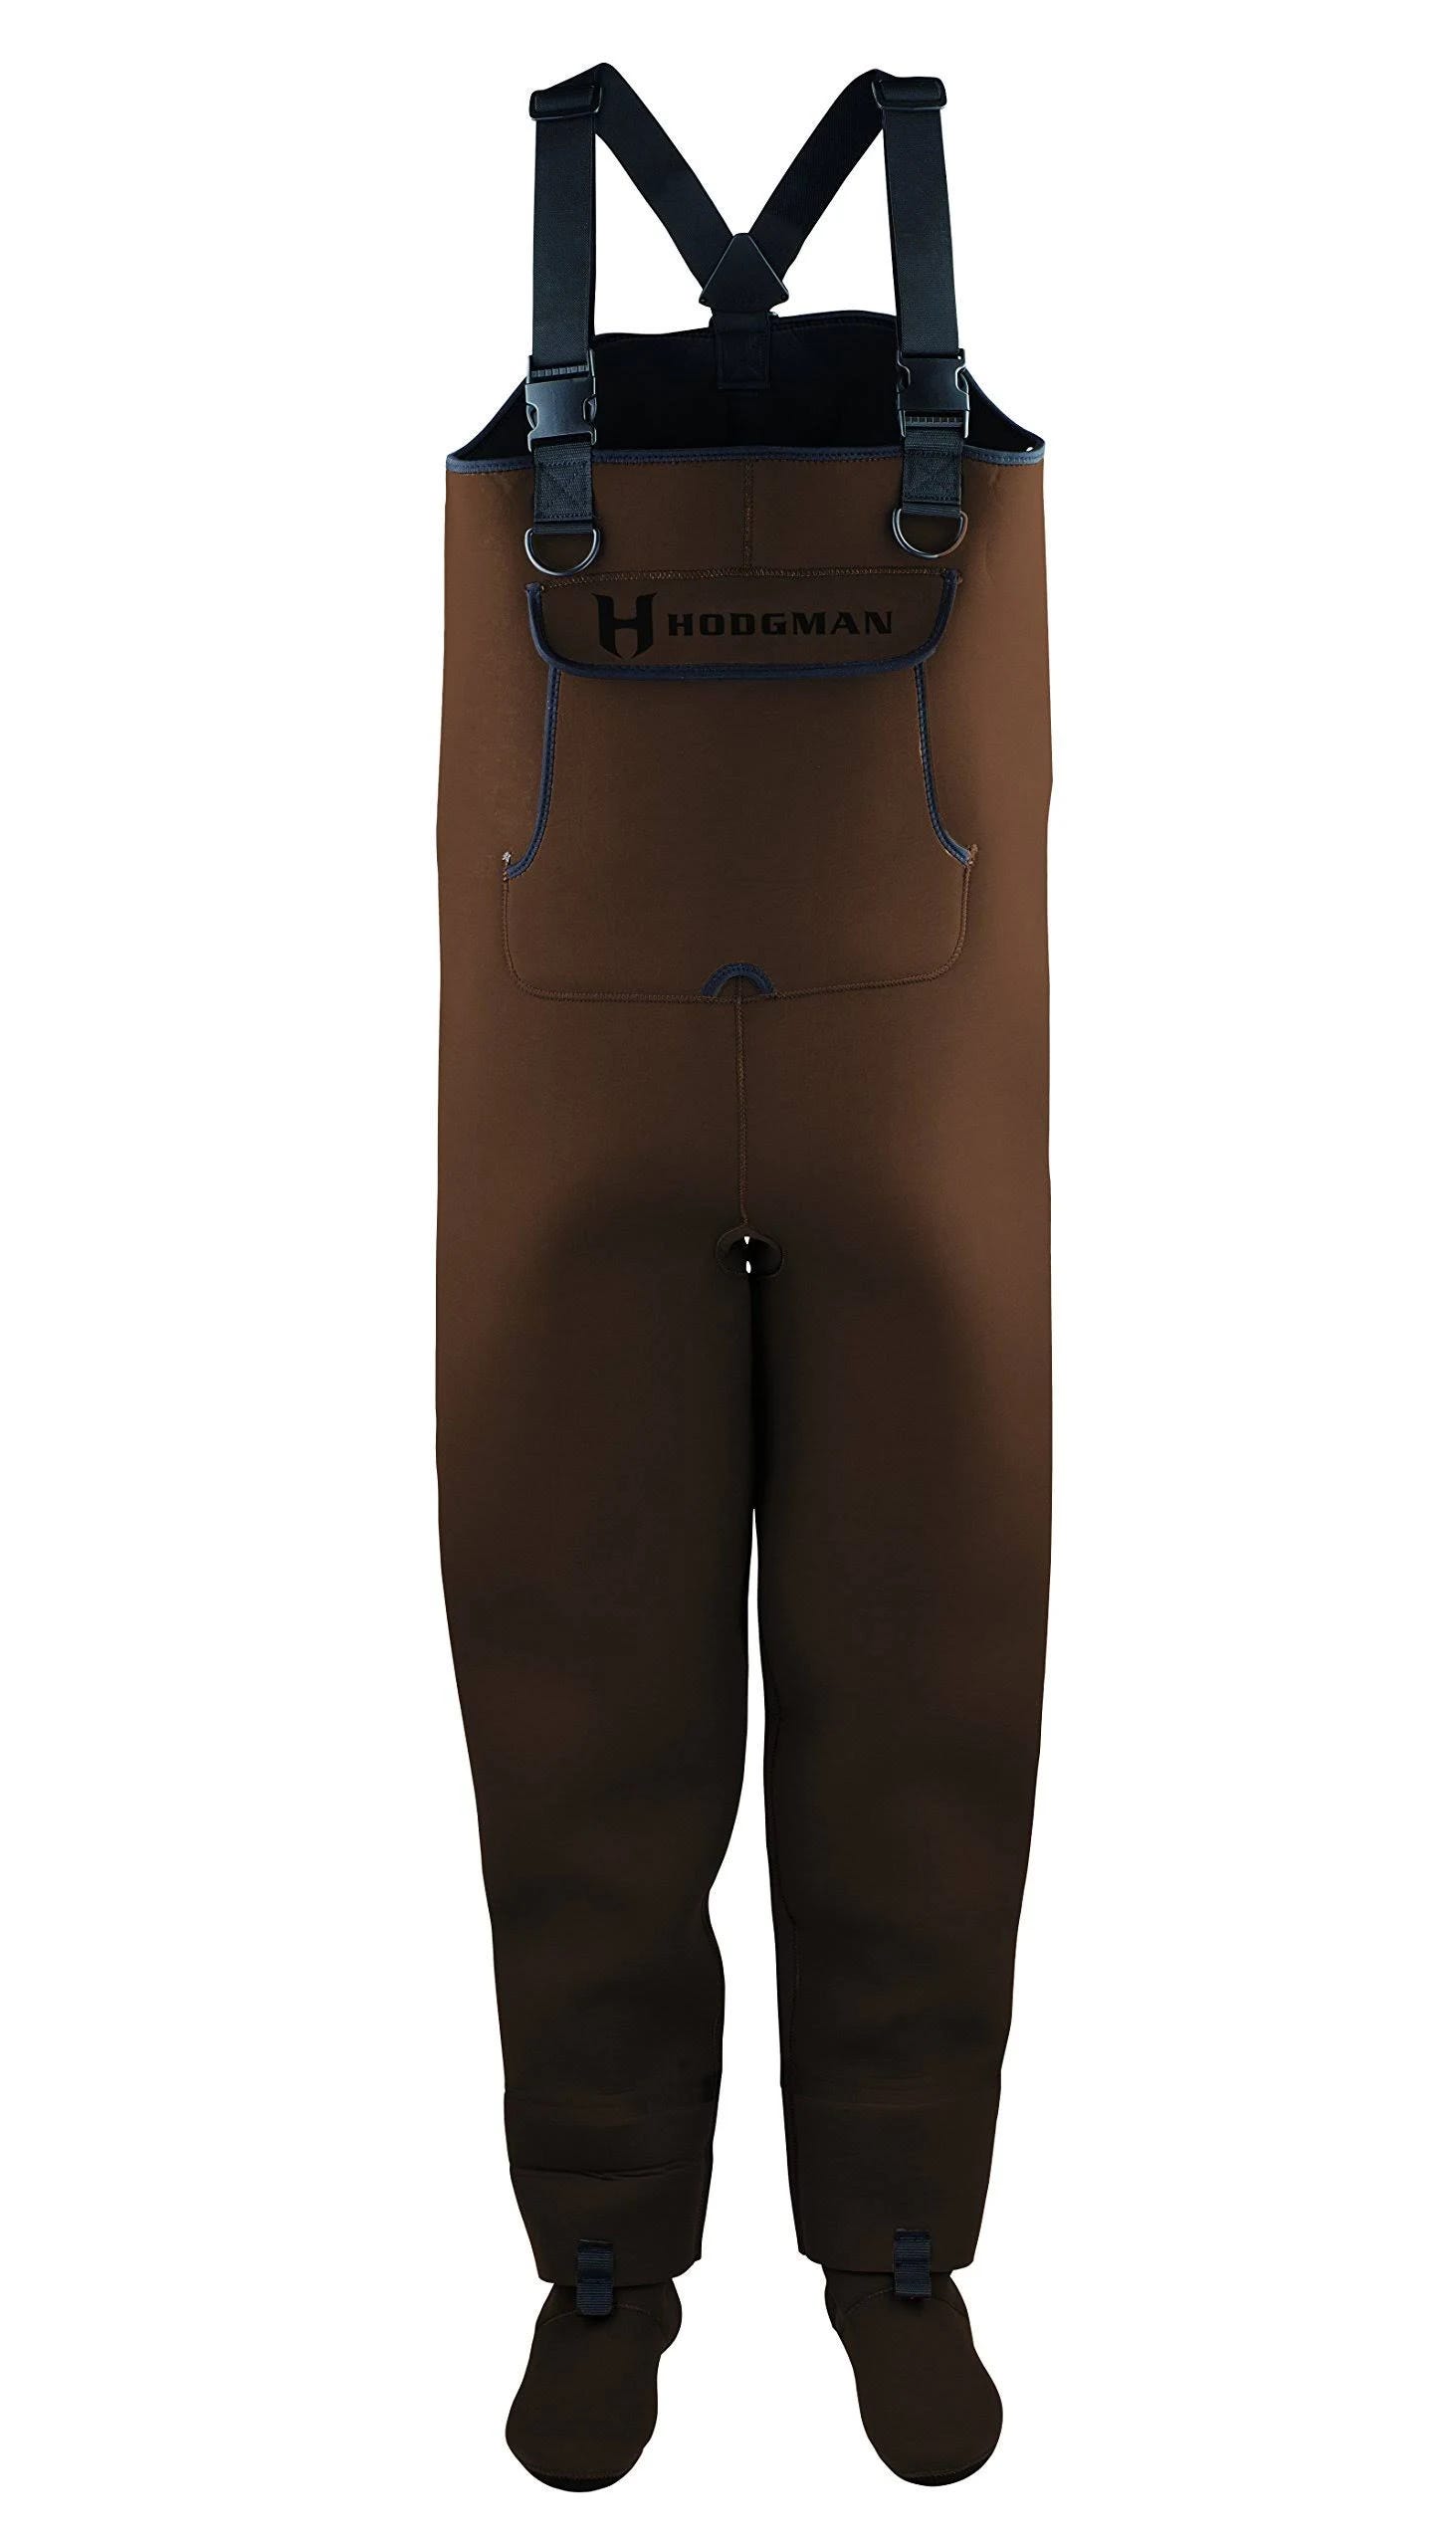 Hodgman Caster Neoprene Stocking Foot Waders for Comfortable Outdoor Adventures | Image